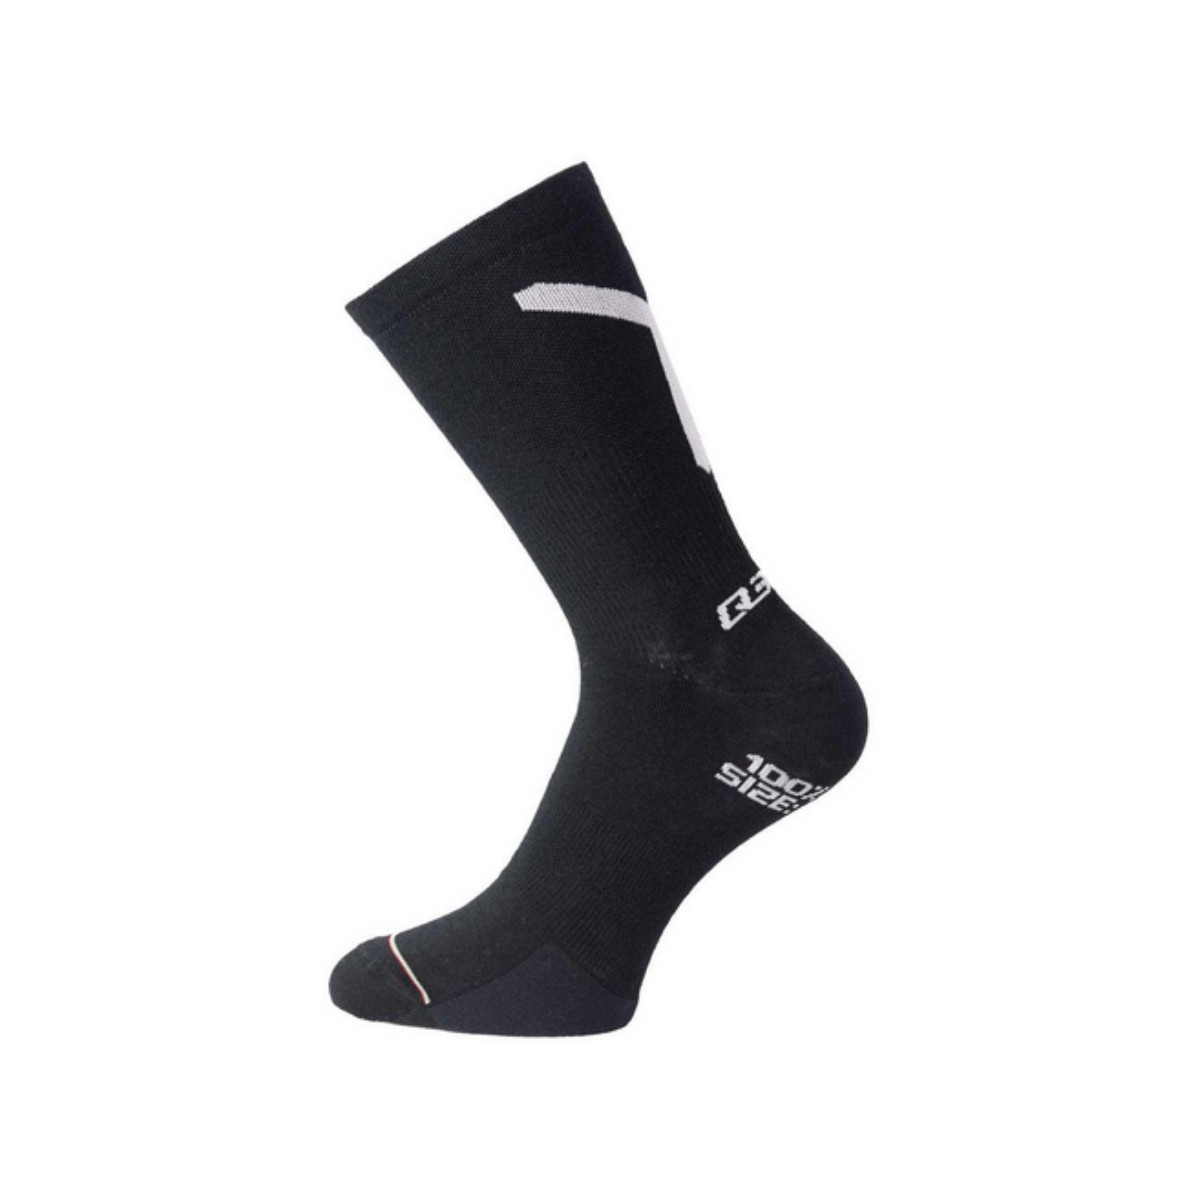 Q36.5 Plus You Socks Black, Size 40-43